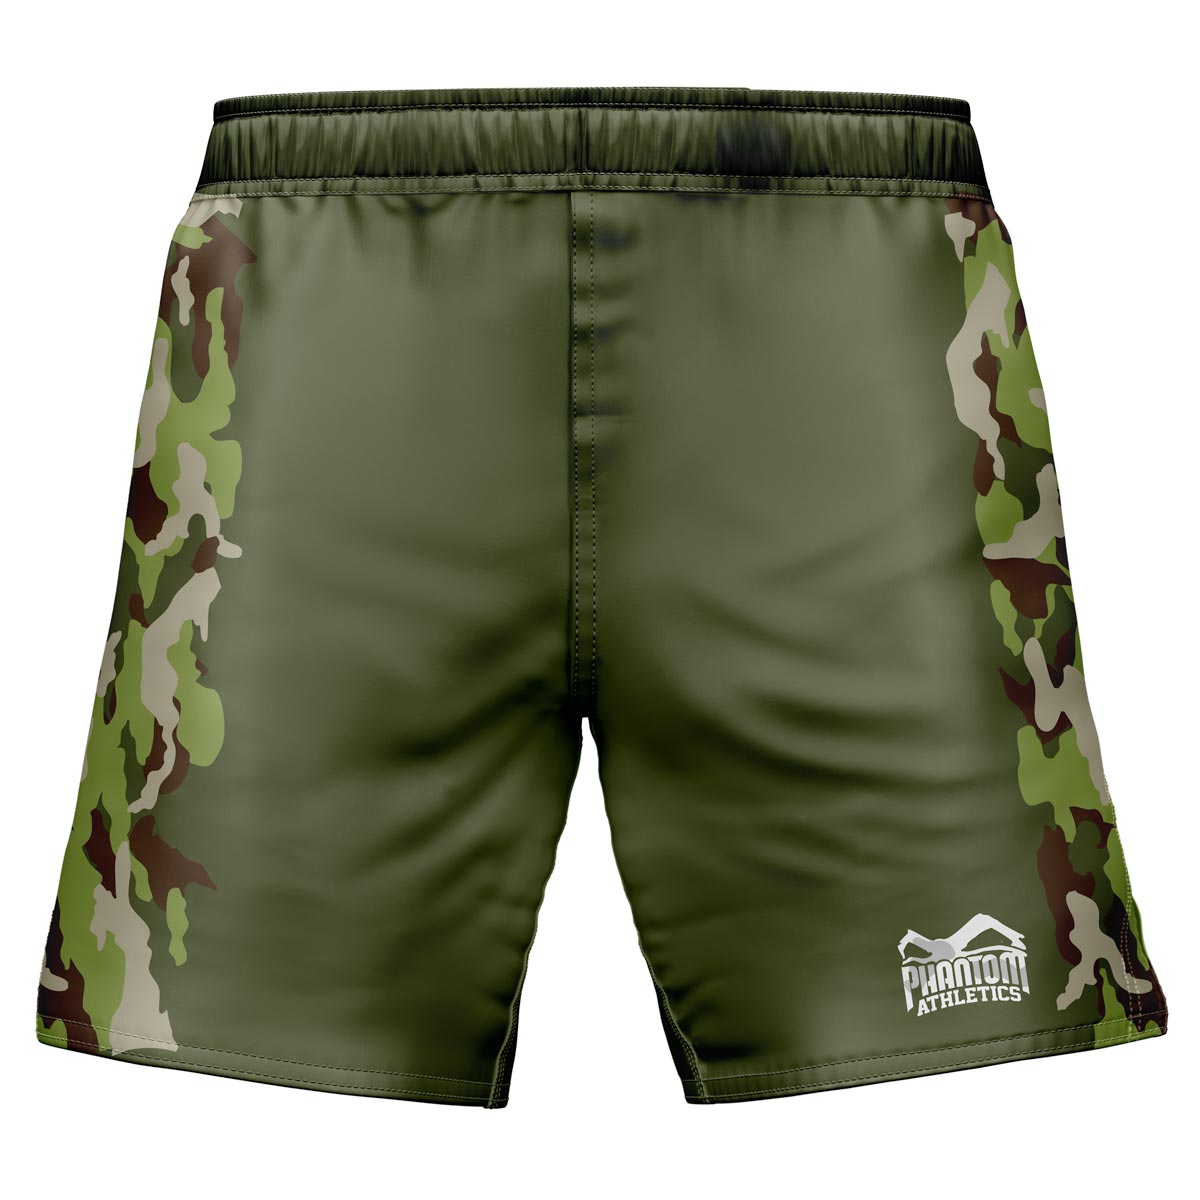 Pantalones cortos de lucha Phantom EVO MMA. En diseño de guerra con elementos de camuflaje verde.